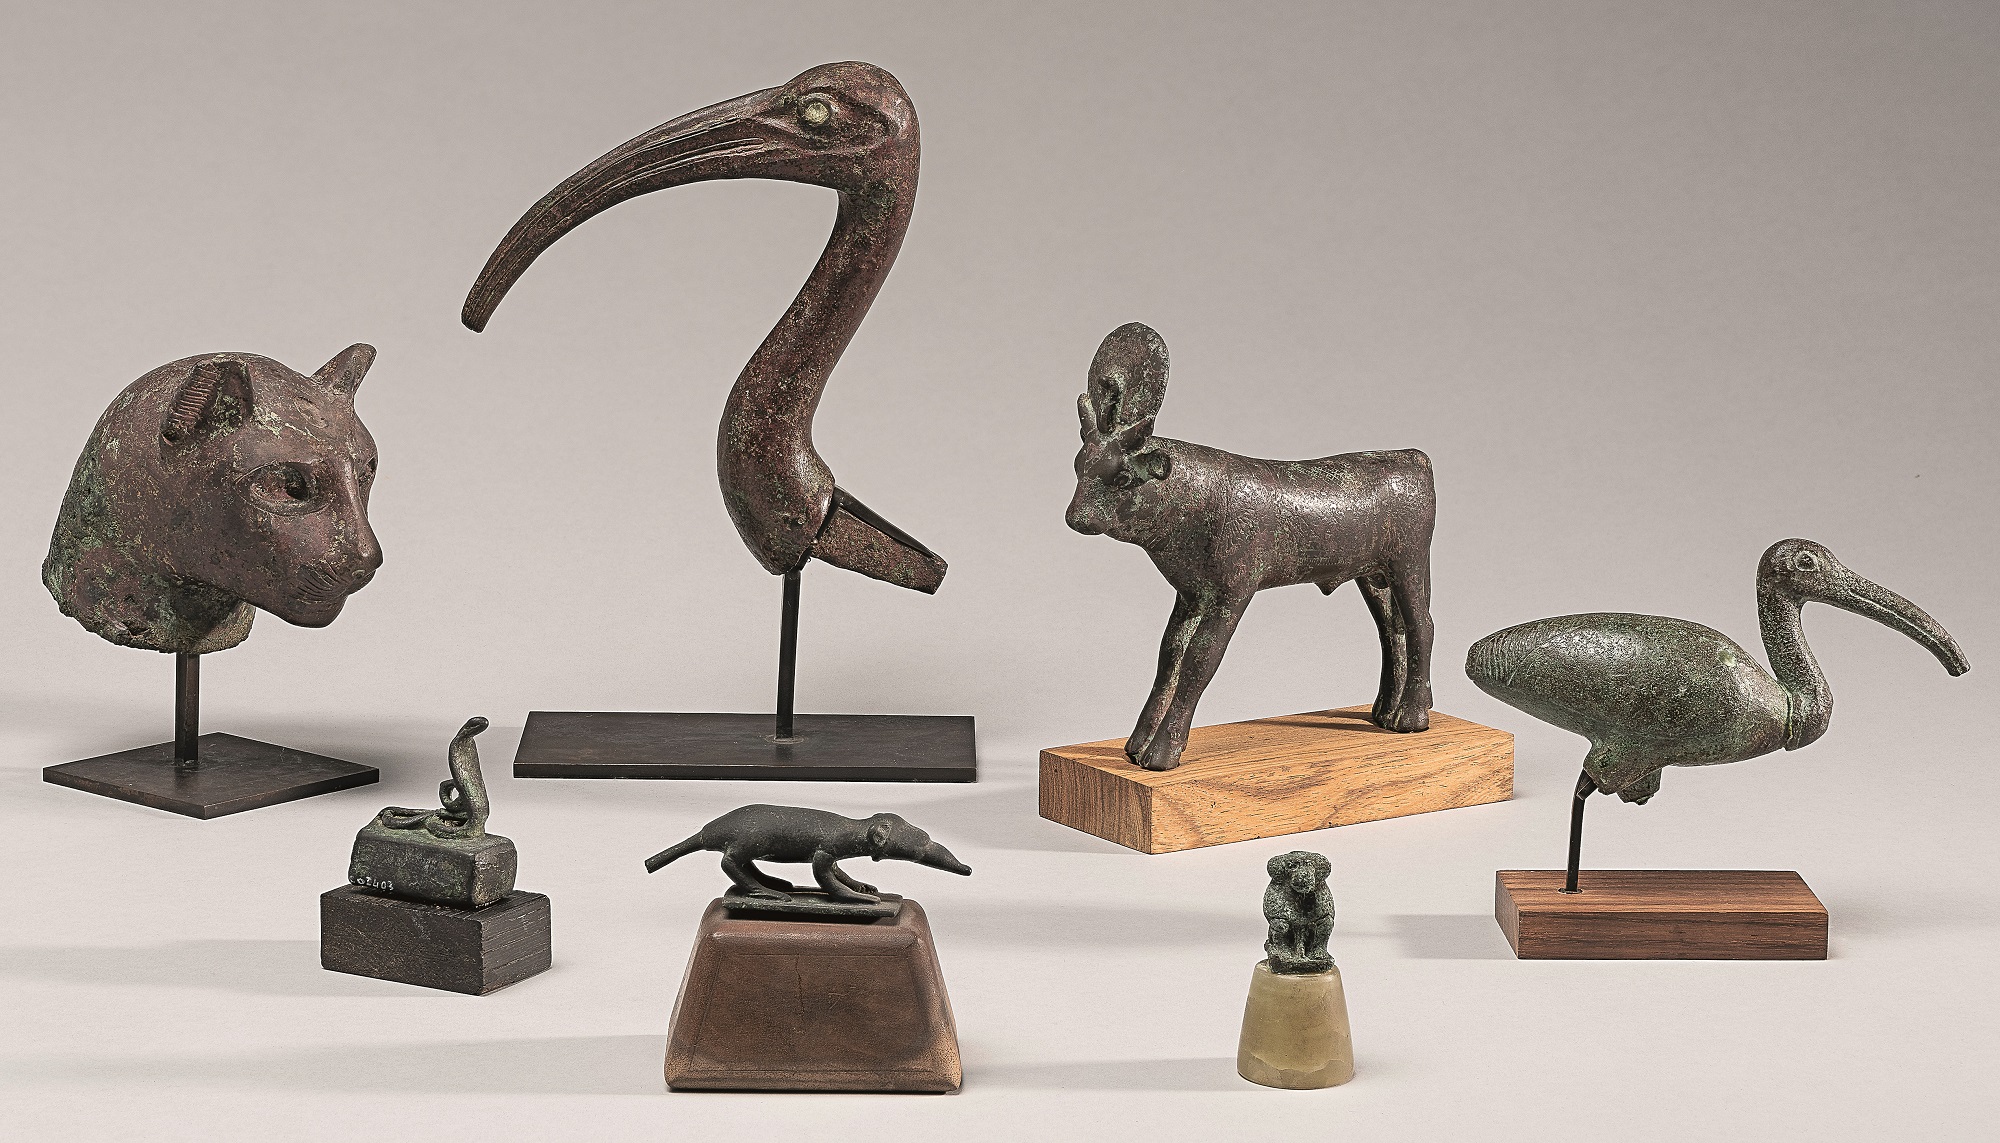 Groupe d’animaux égyptiens. Photo service de presse. © Agence photographique du musée Rodin - Jérome Manoukian